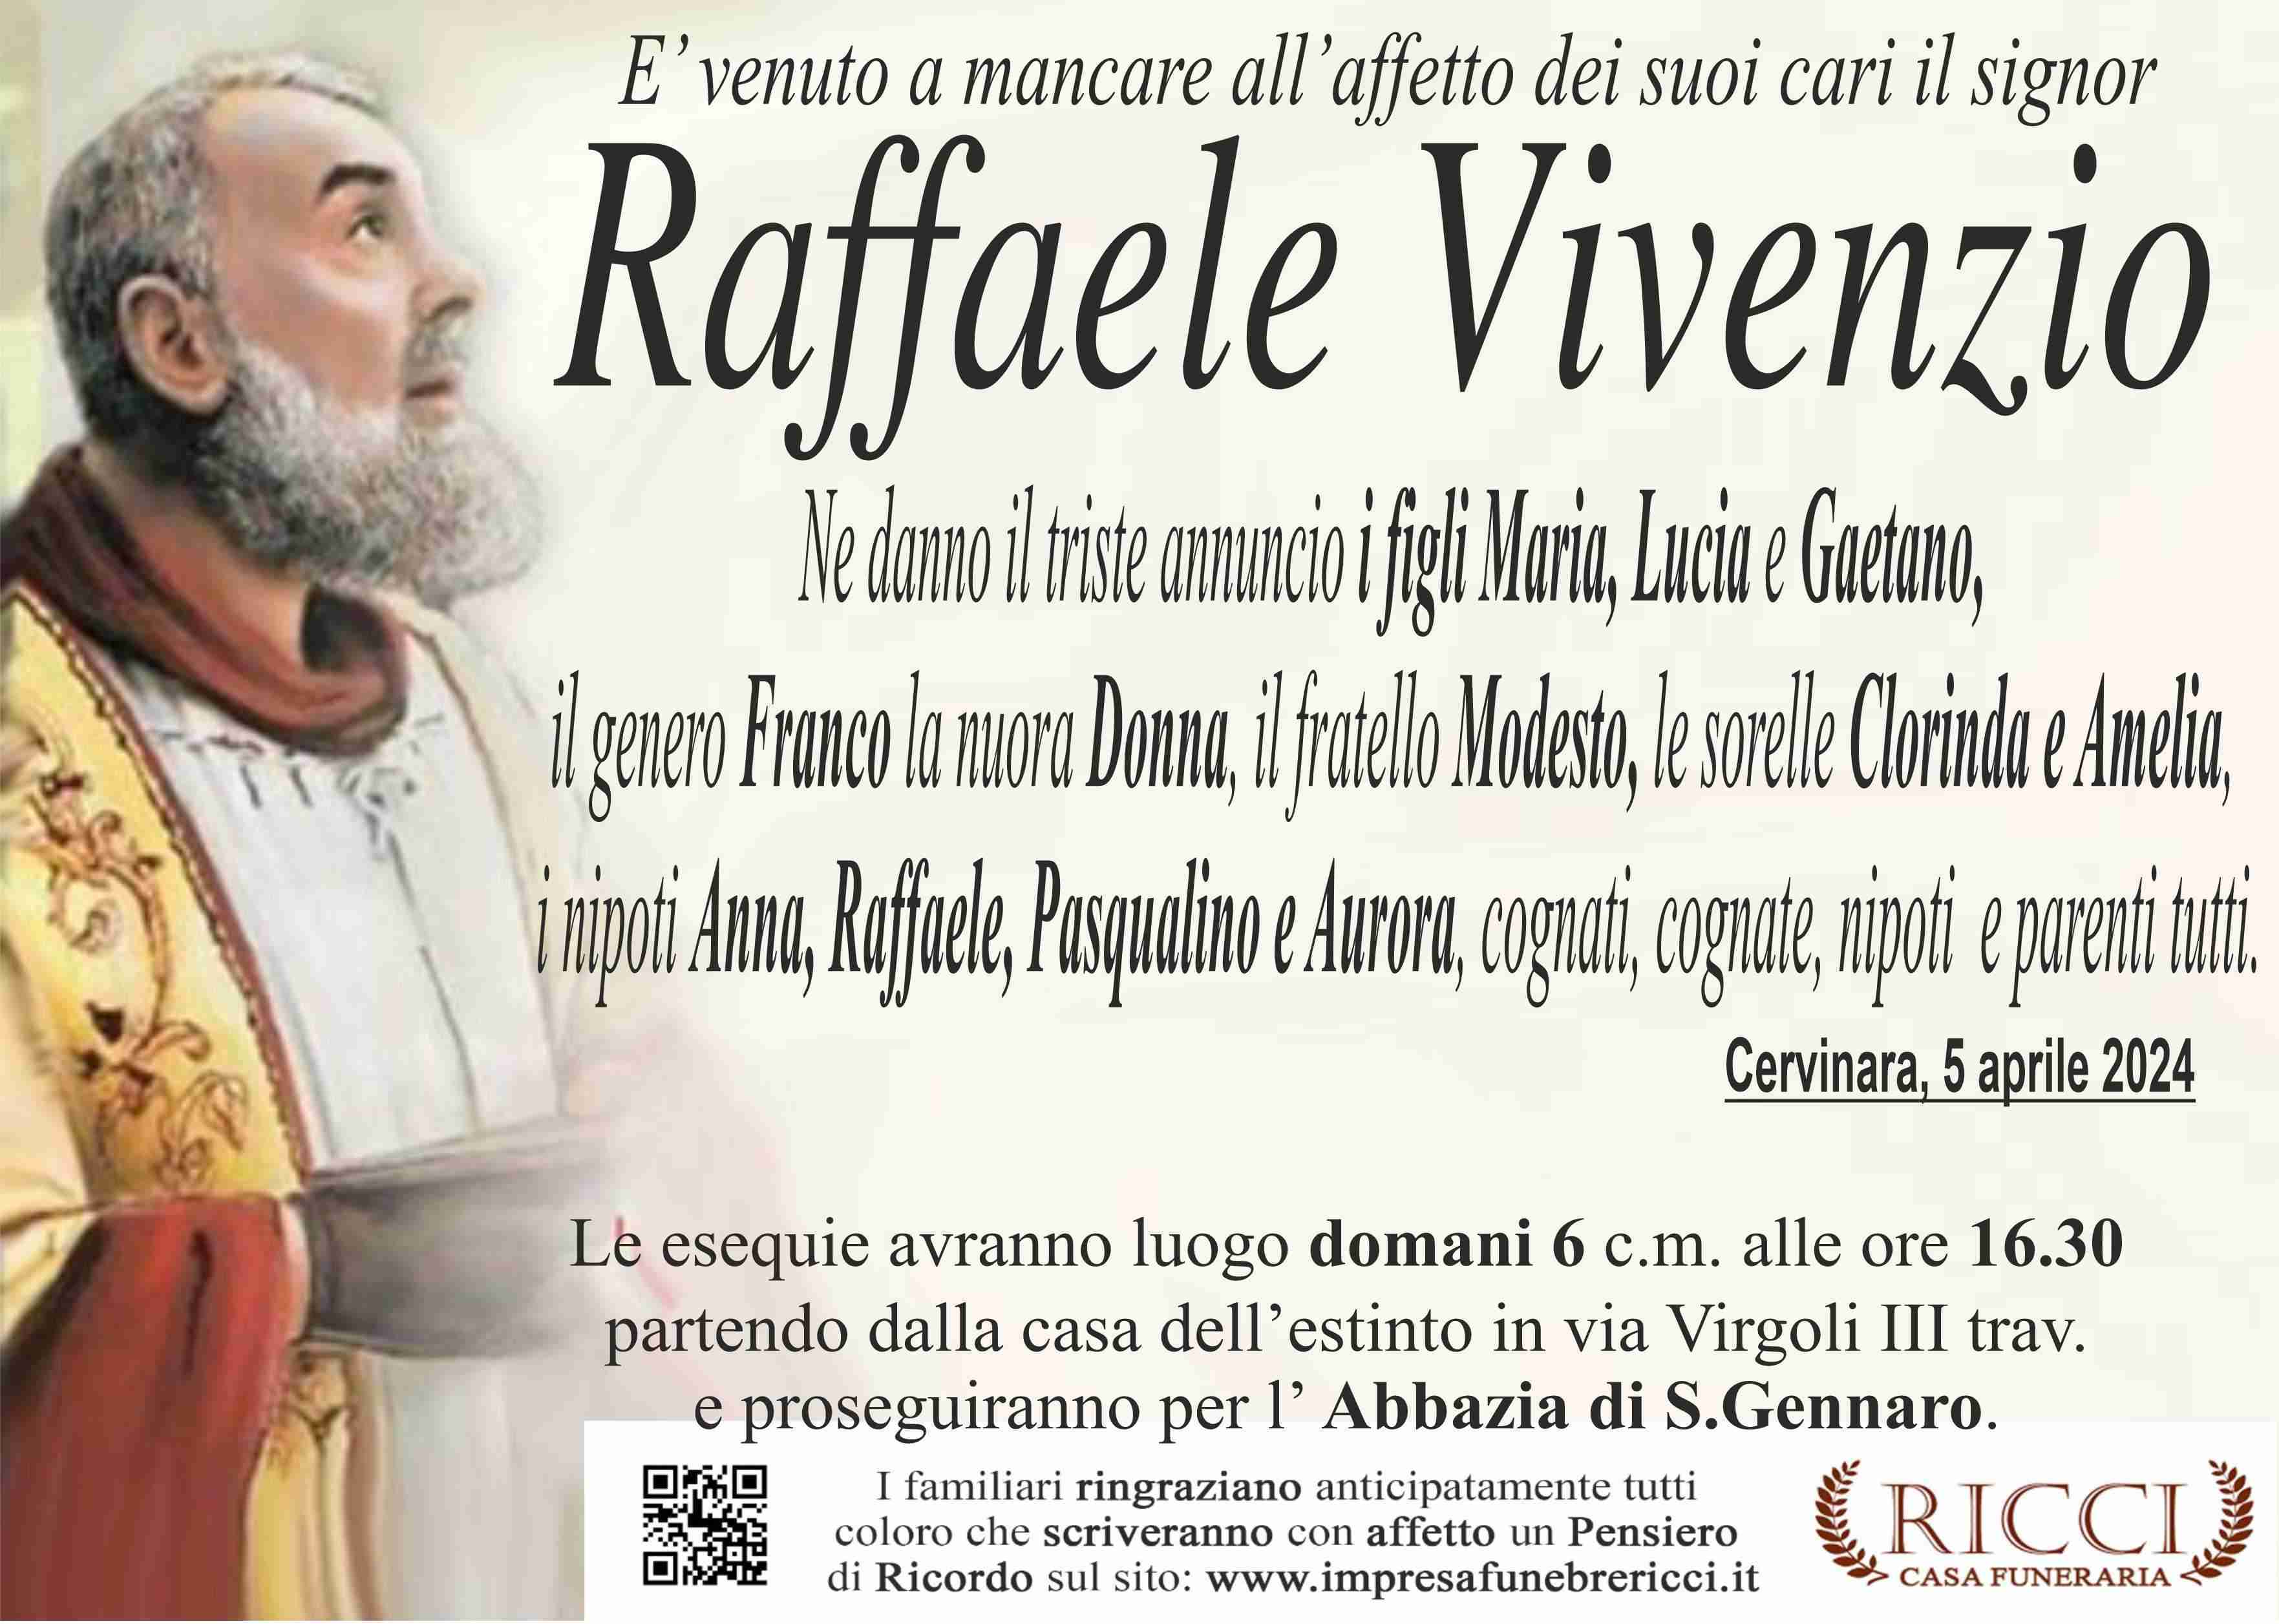 Raffaele Vivenzio